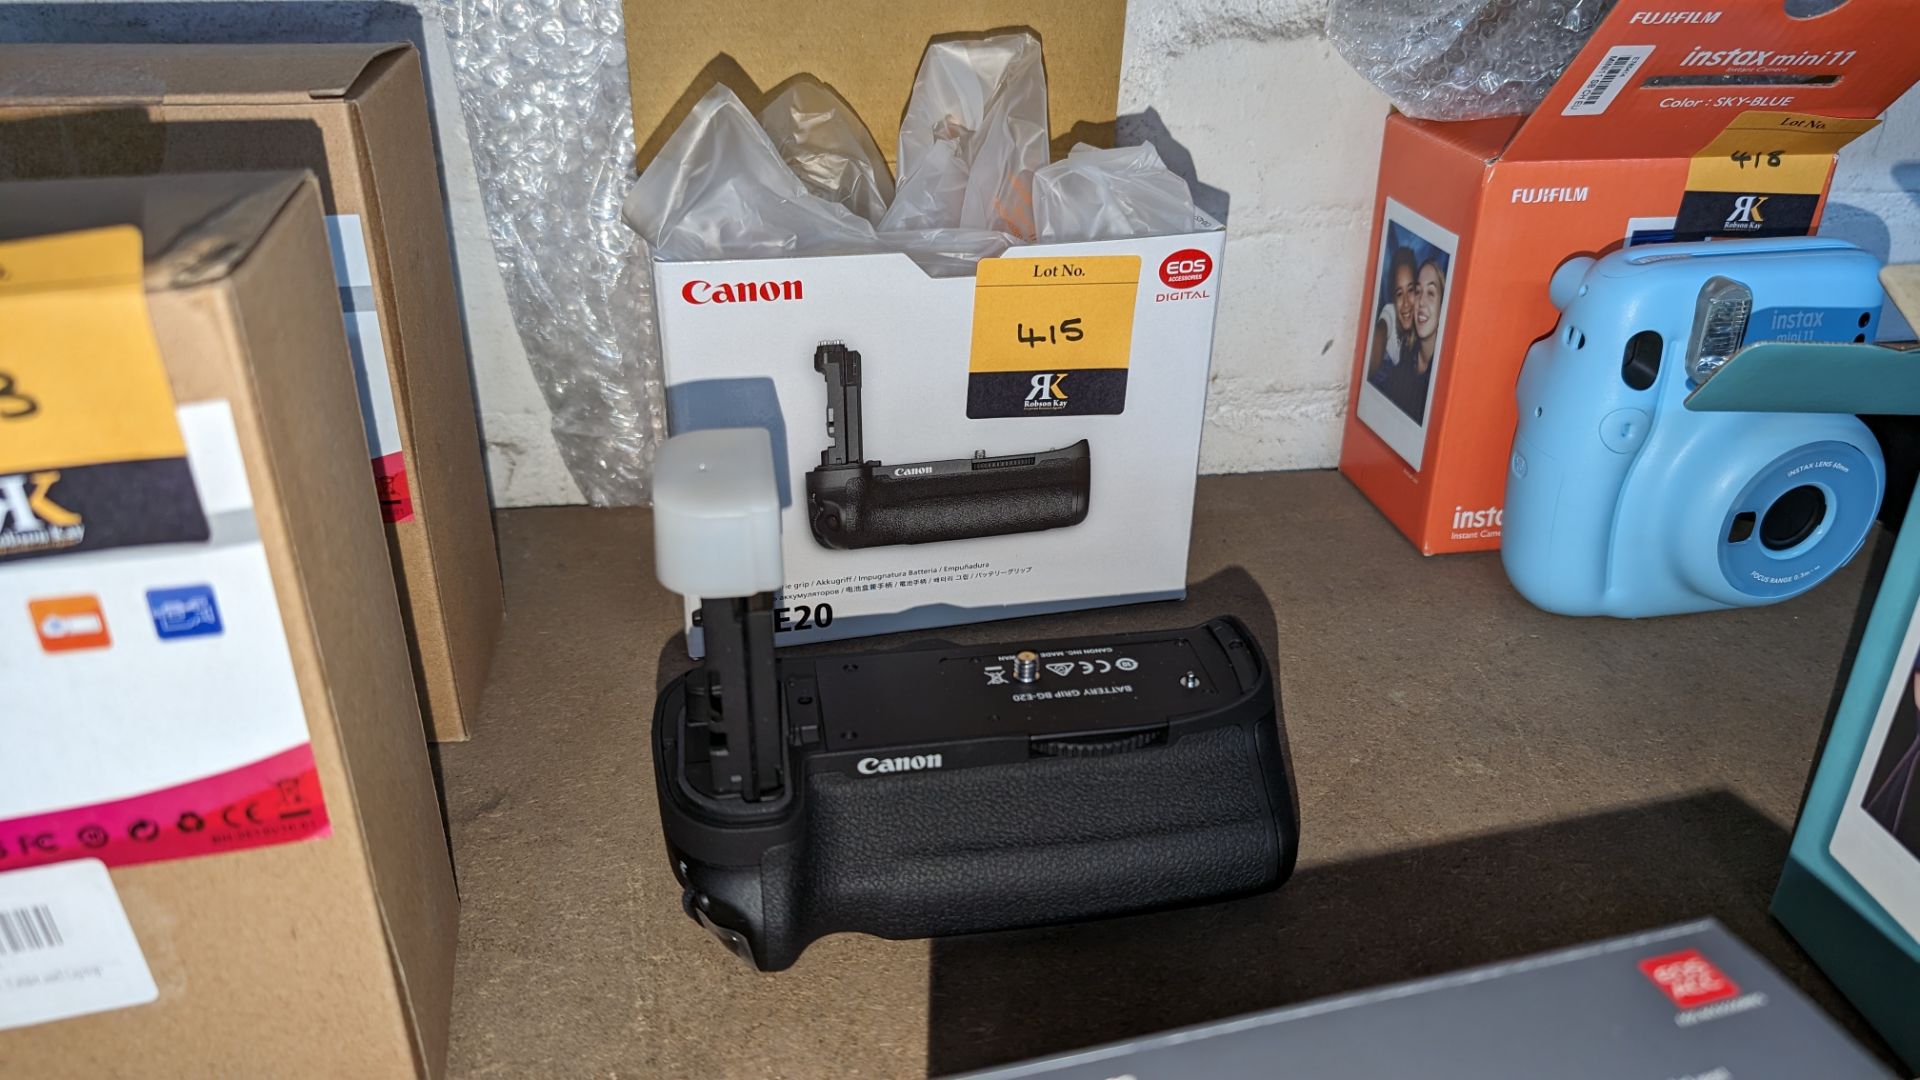 Canon model BG-E20 battery grip